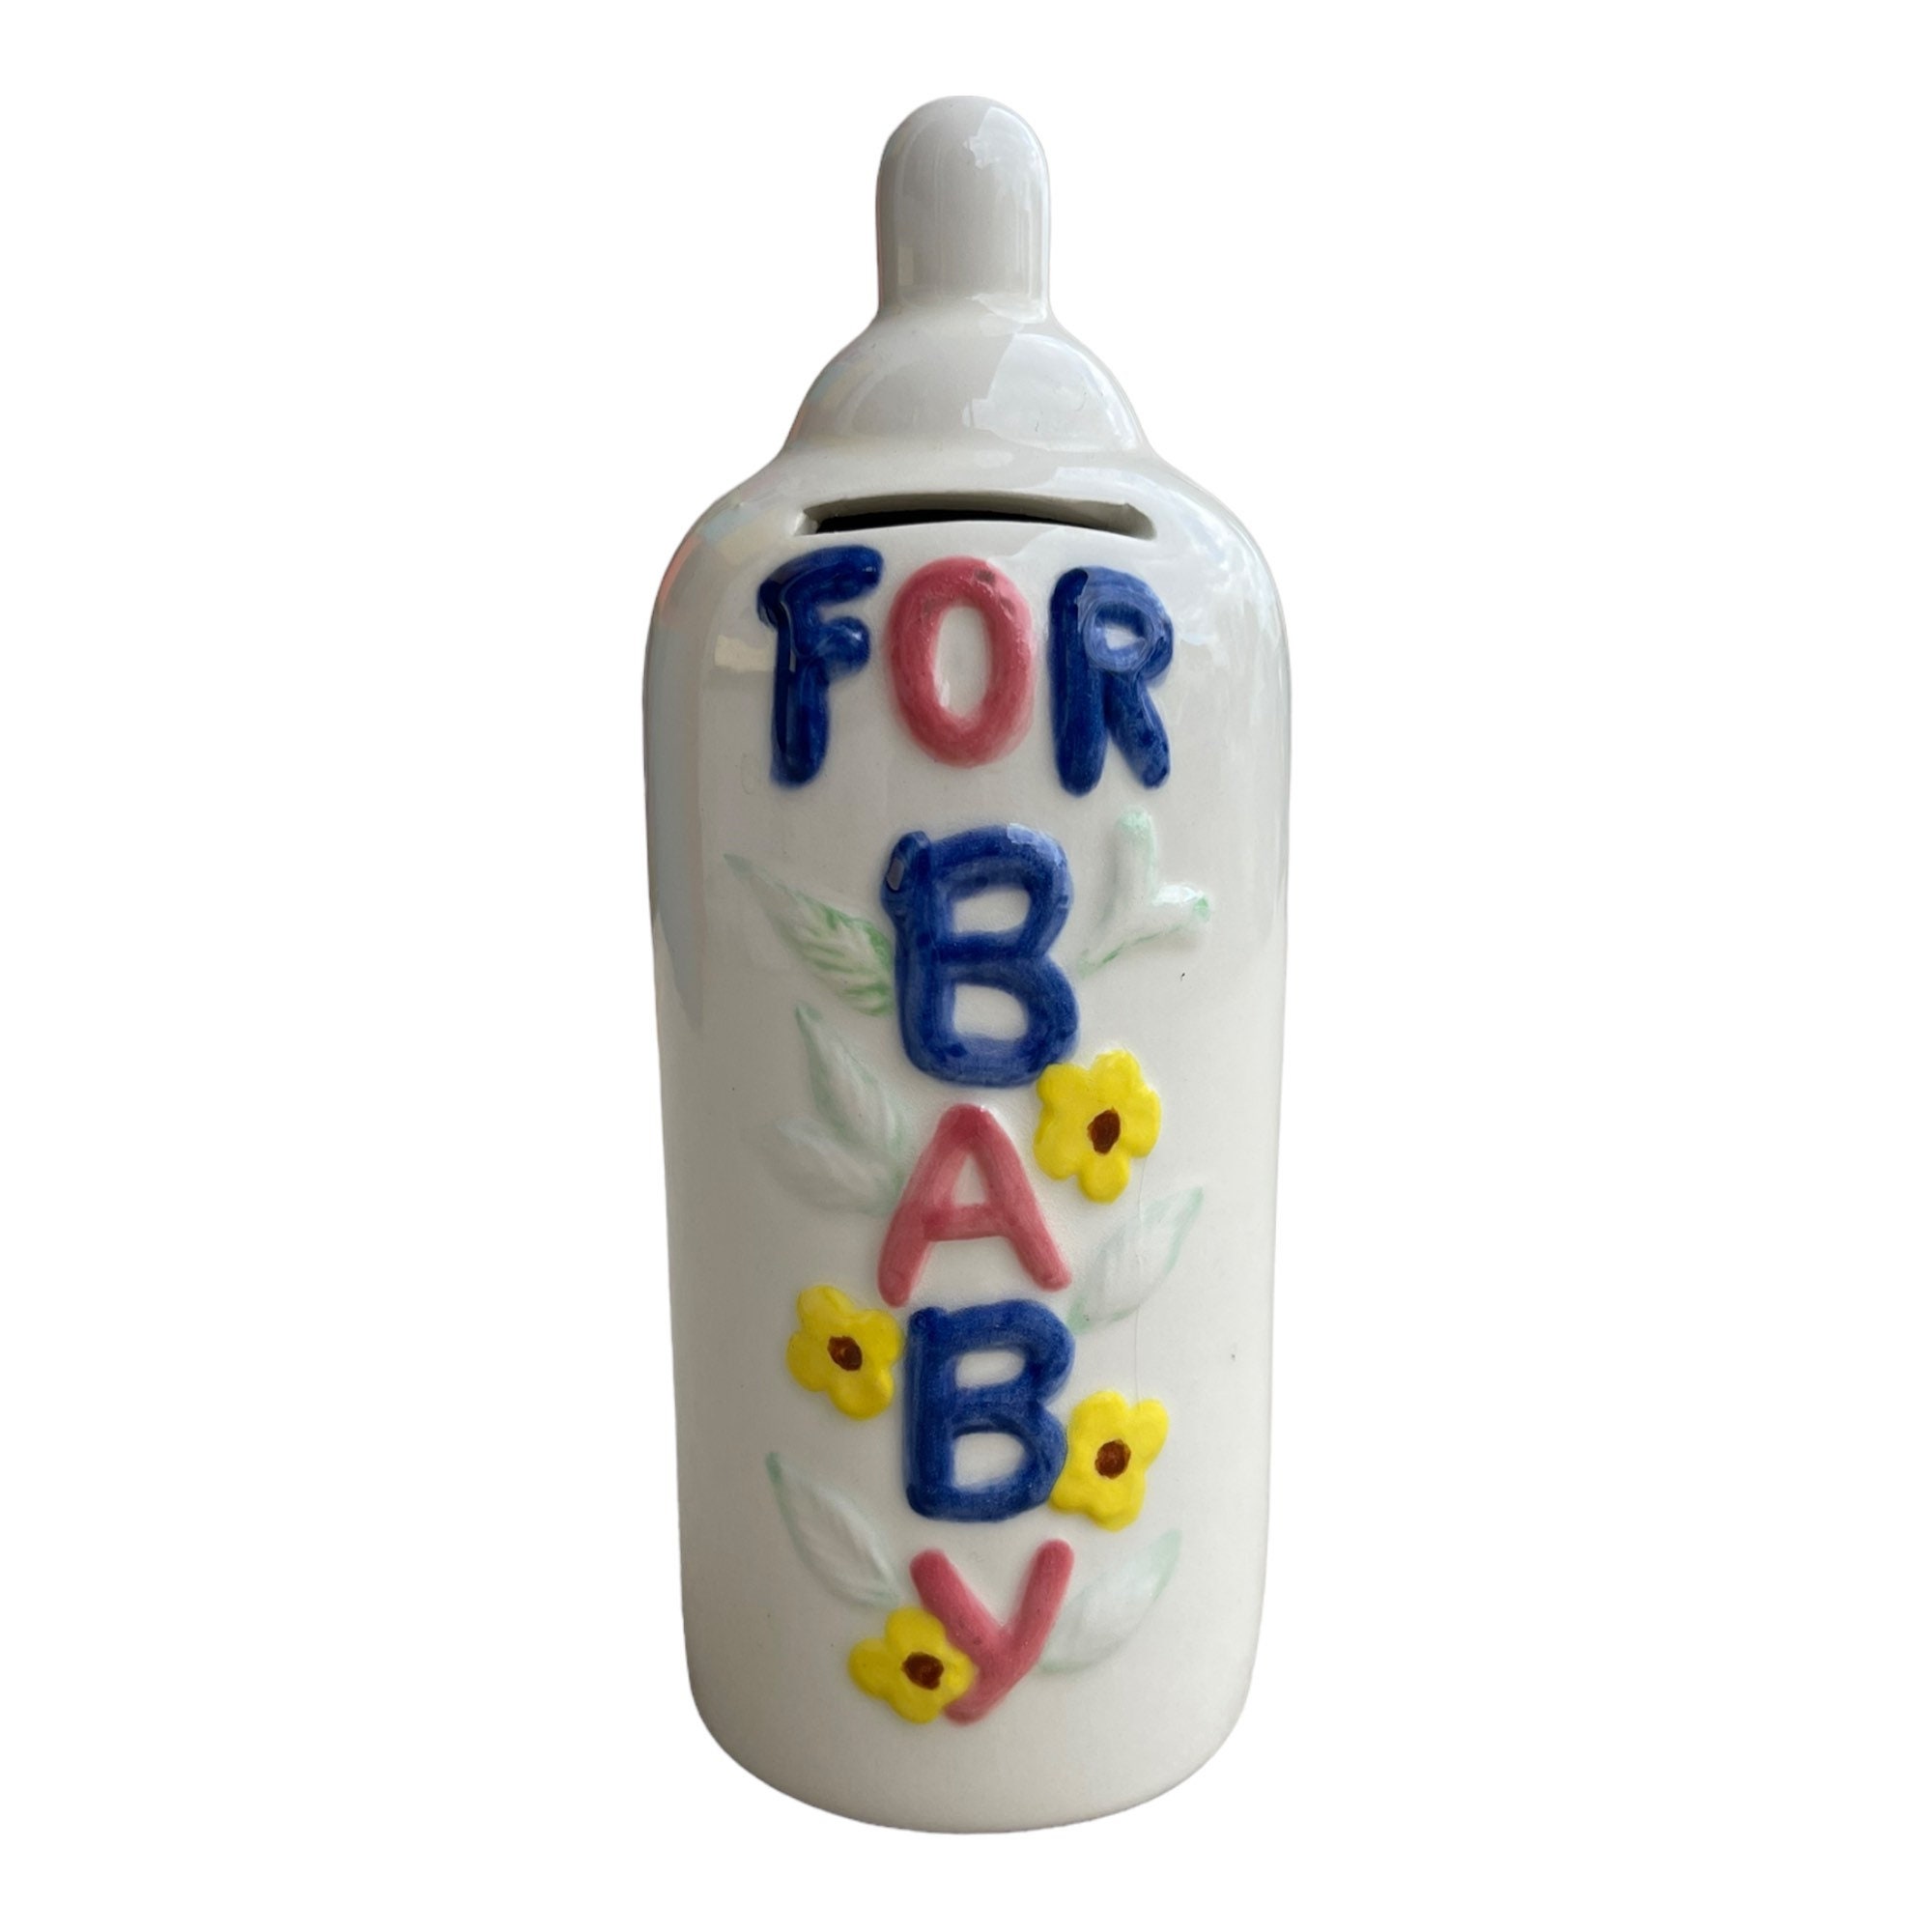 Homeford Jumbo Plastic Baby Milk Bottle Coin Bank 15-Inch - Light Blue